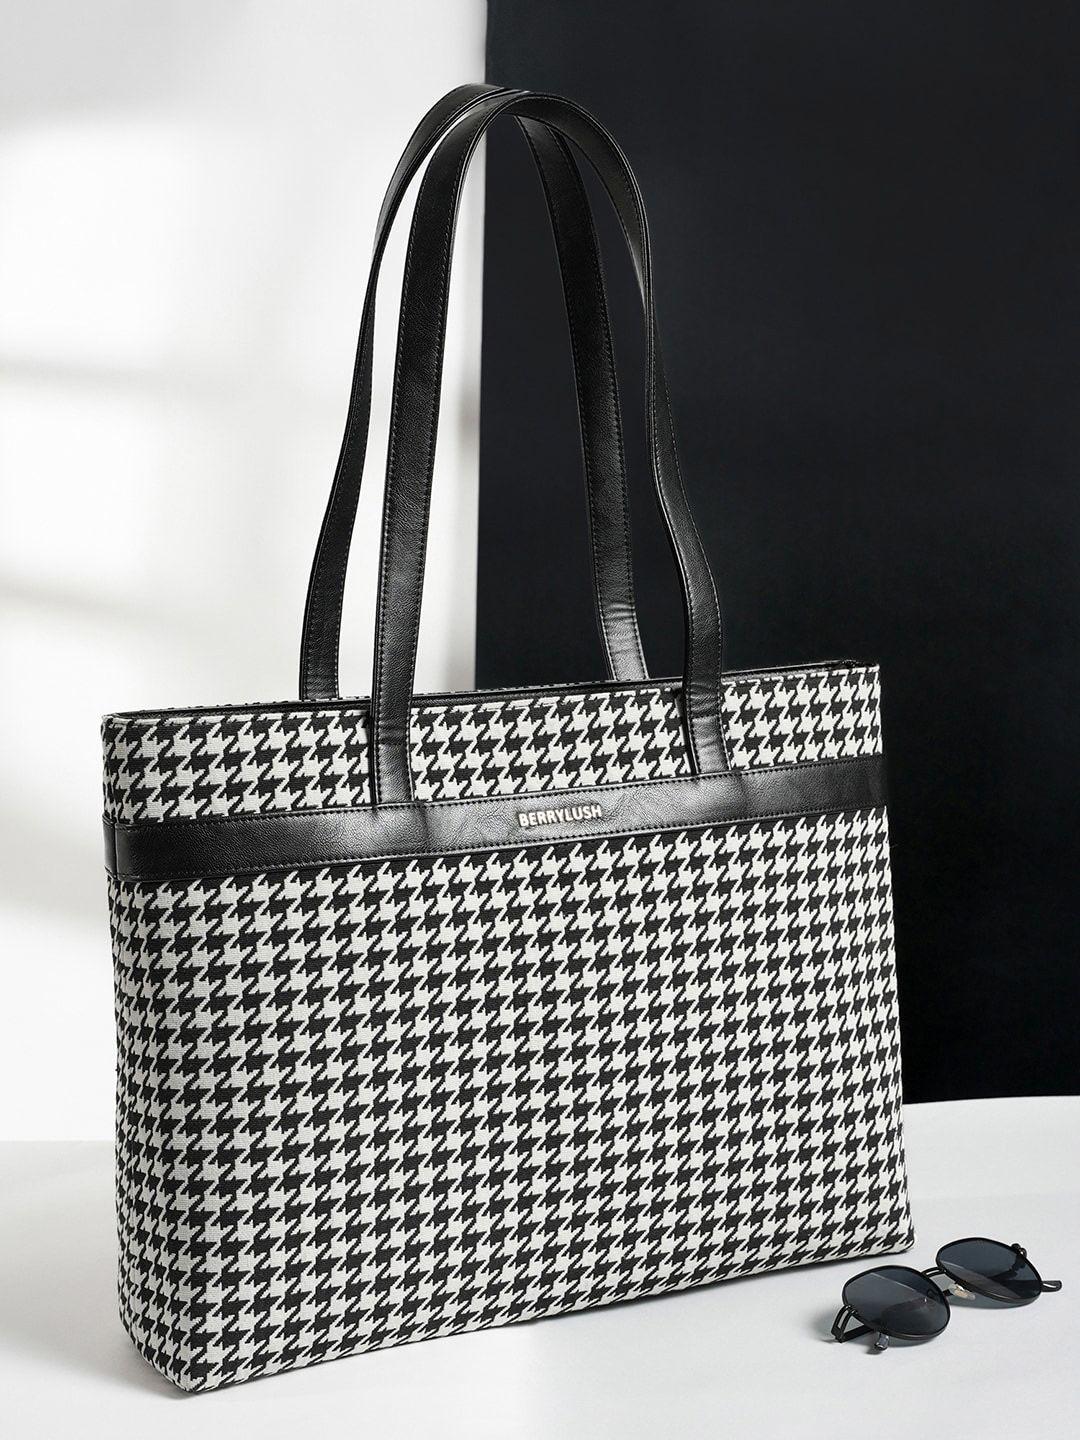 berrylush black & white printed structured laptop tote bag